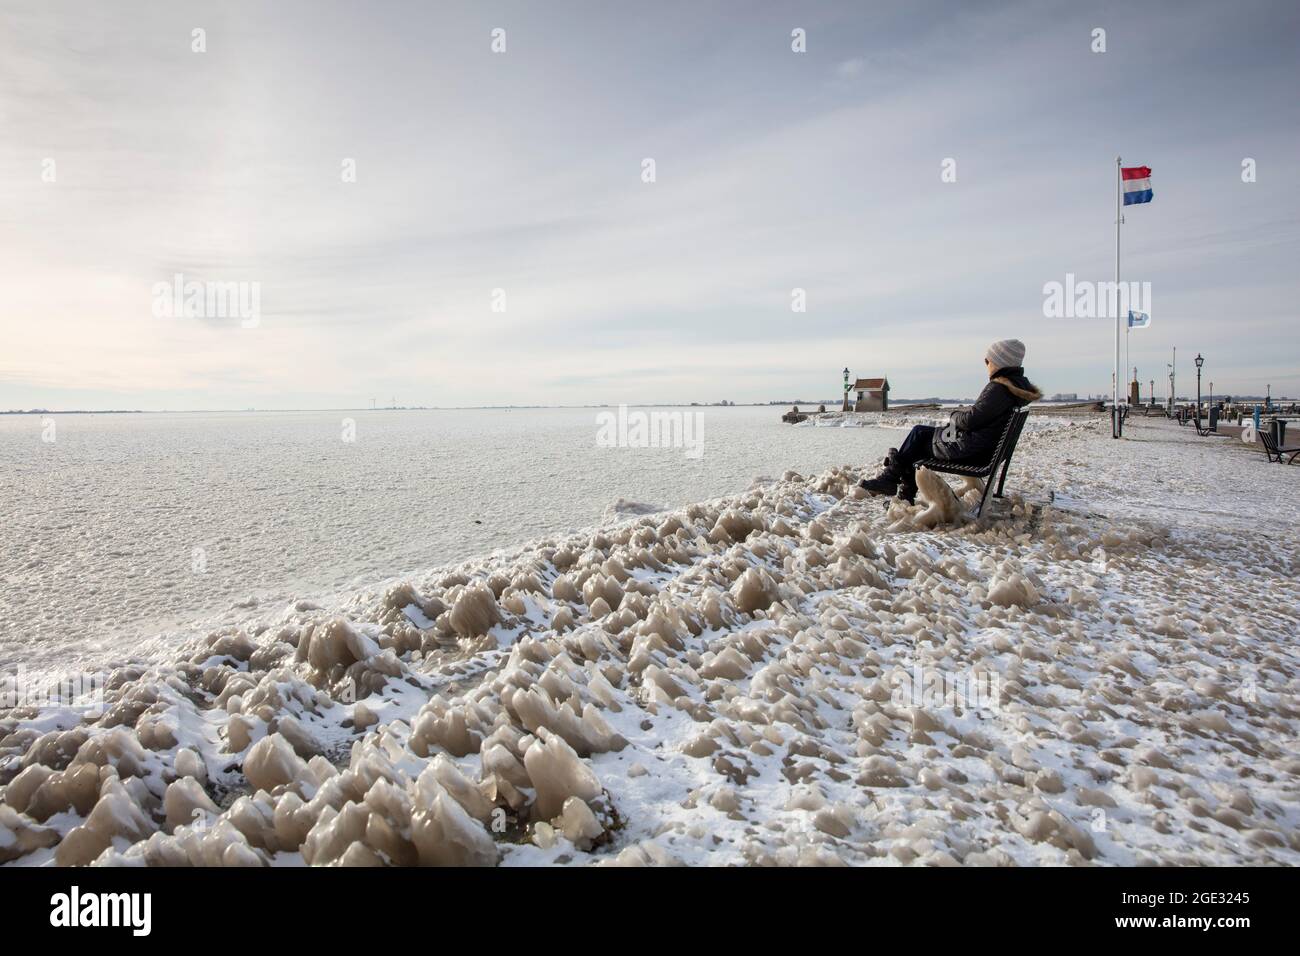 The Netherlands, Volendam, harbour, winter, frozen, frost, ice, woman. Markermeer. Stock Photo